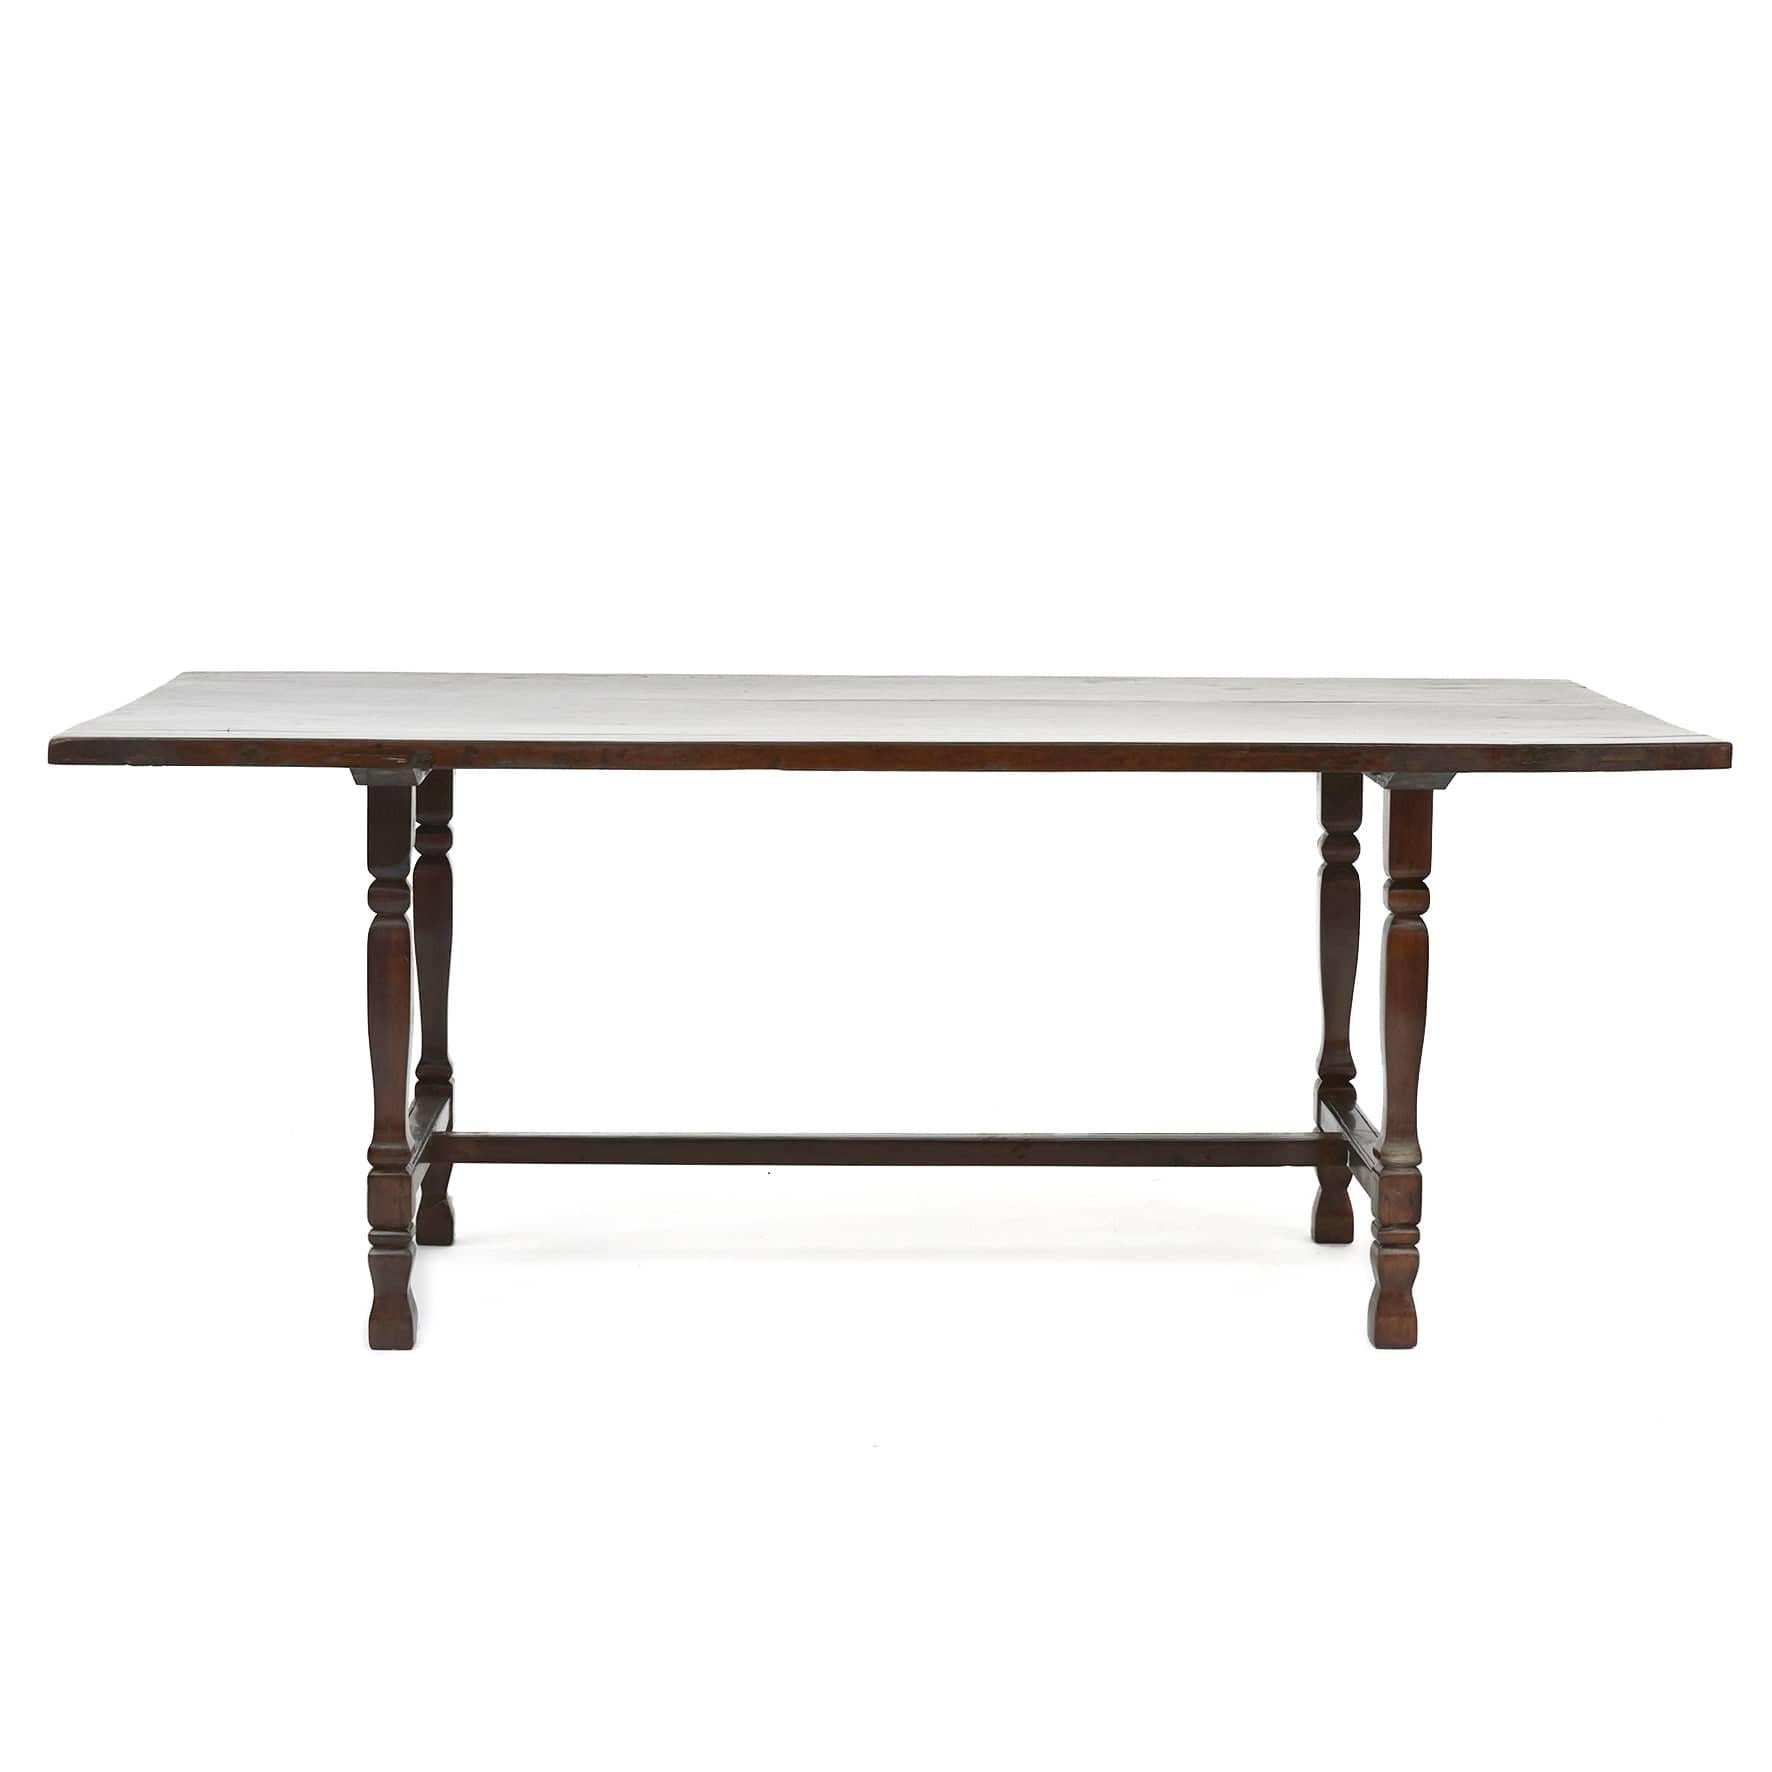 Langer Tisch aus Narra-Holz.
Holz mit einer schönen Maserung.
Die Tischplatte ist aus einem Stück Holz.

Von den Philippinen 1860 - 1880.
Der Nationalbaum der Philippinen ist heute geschützt.

Die Philippinen waren von 1565 bis 1898 eine spanische